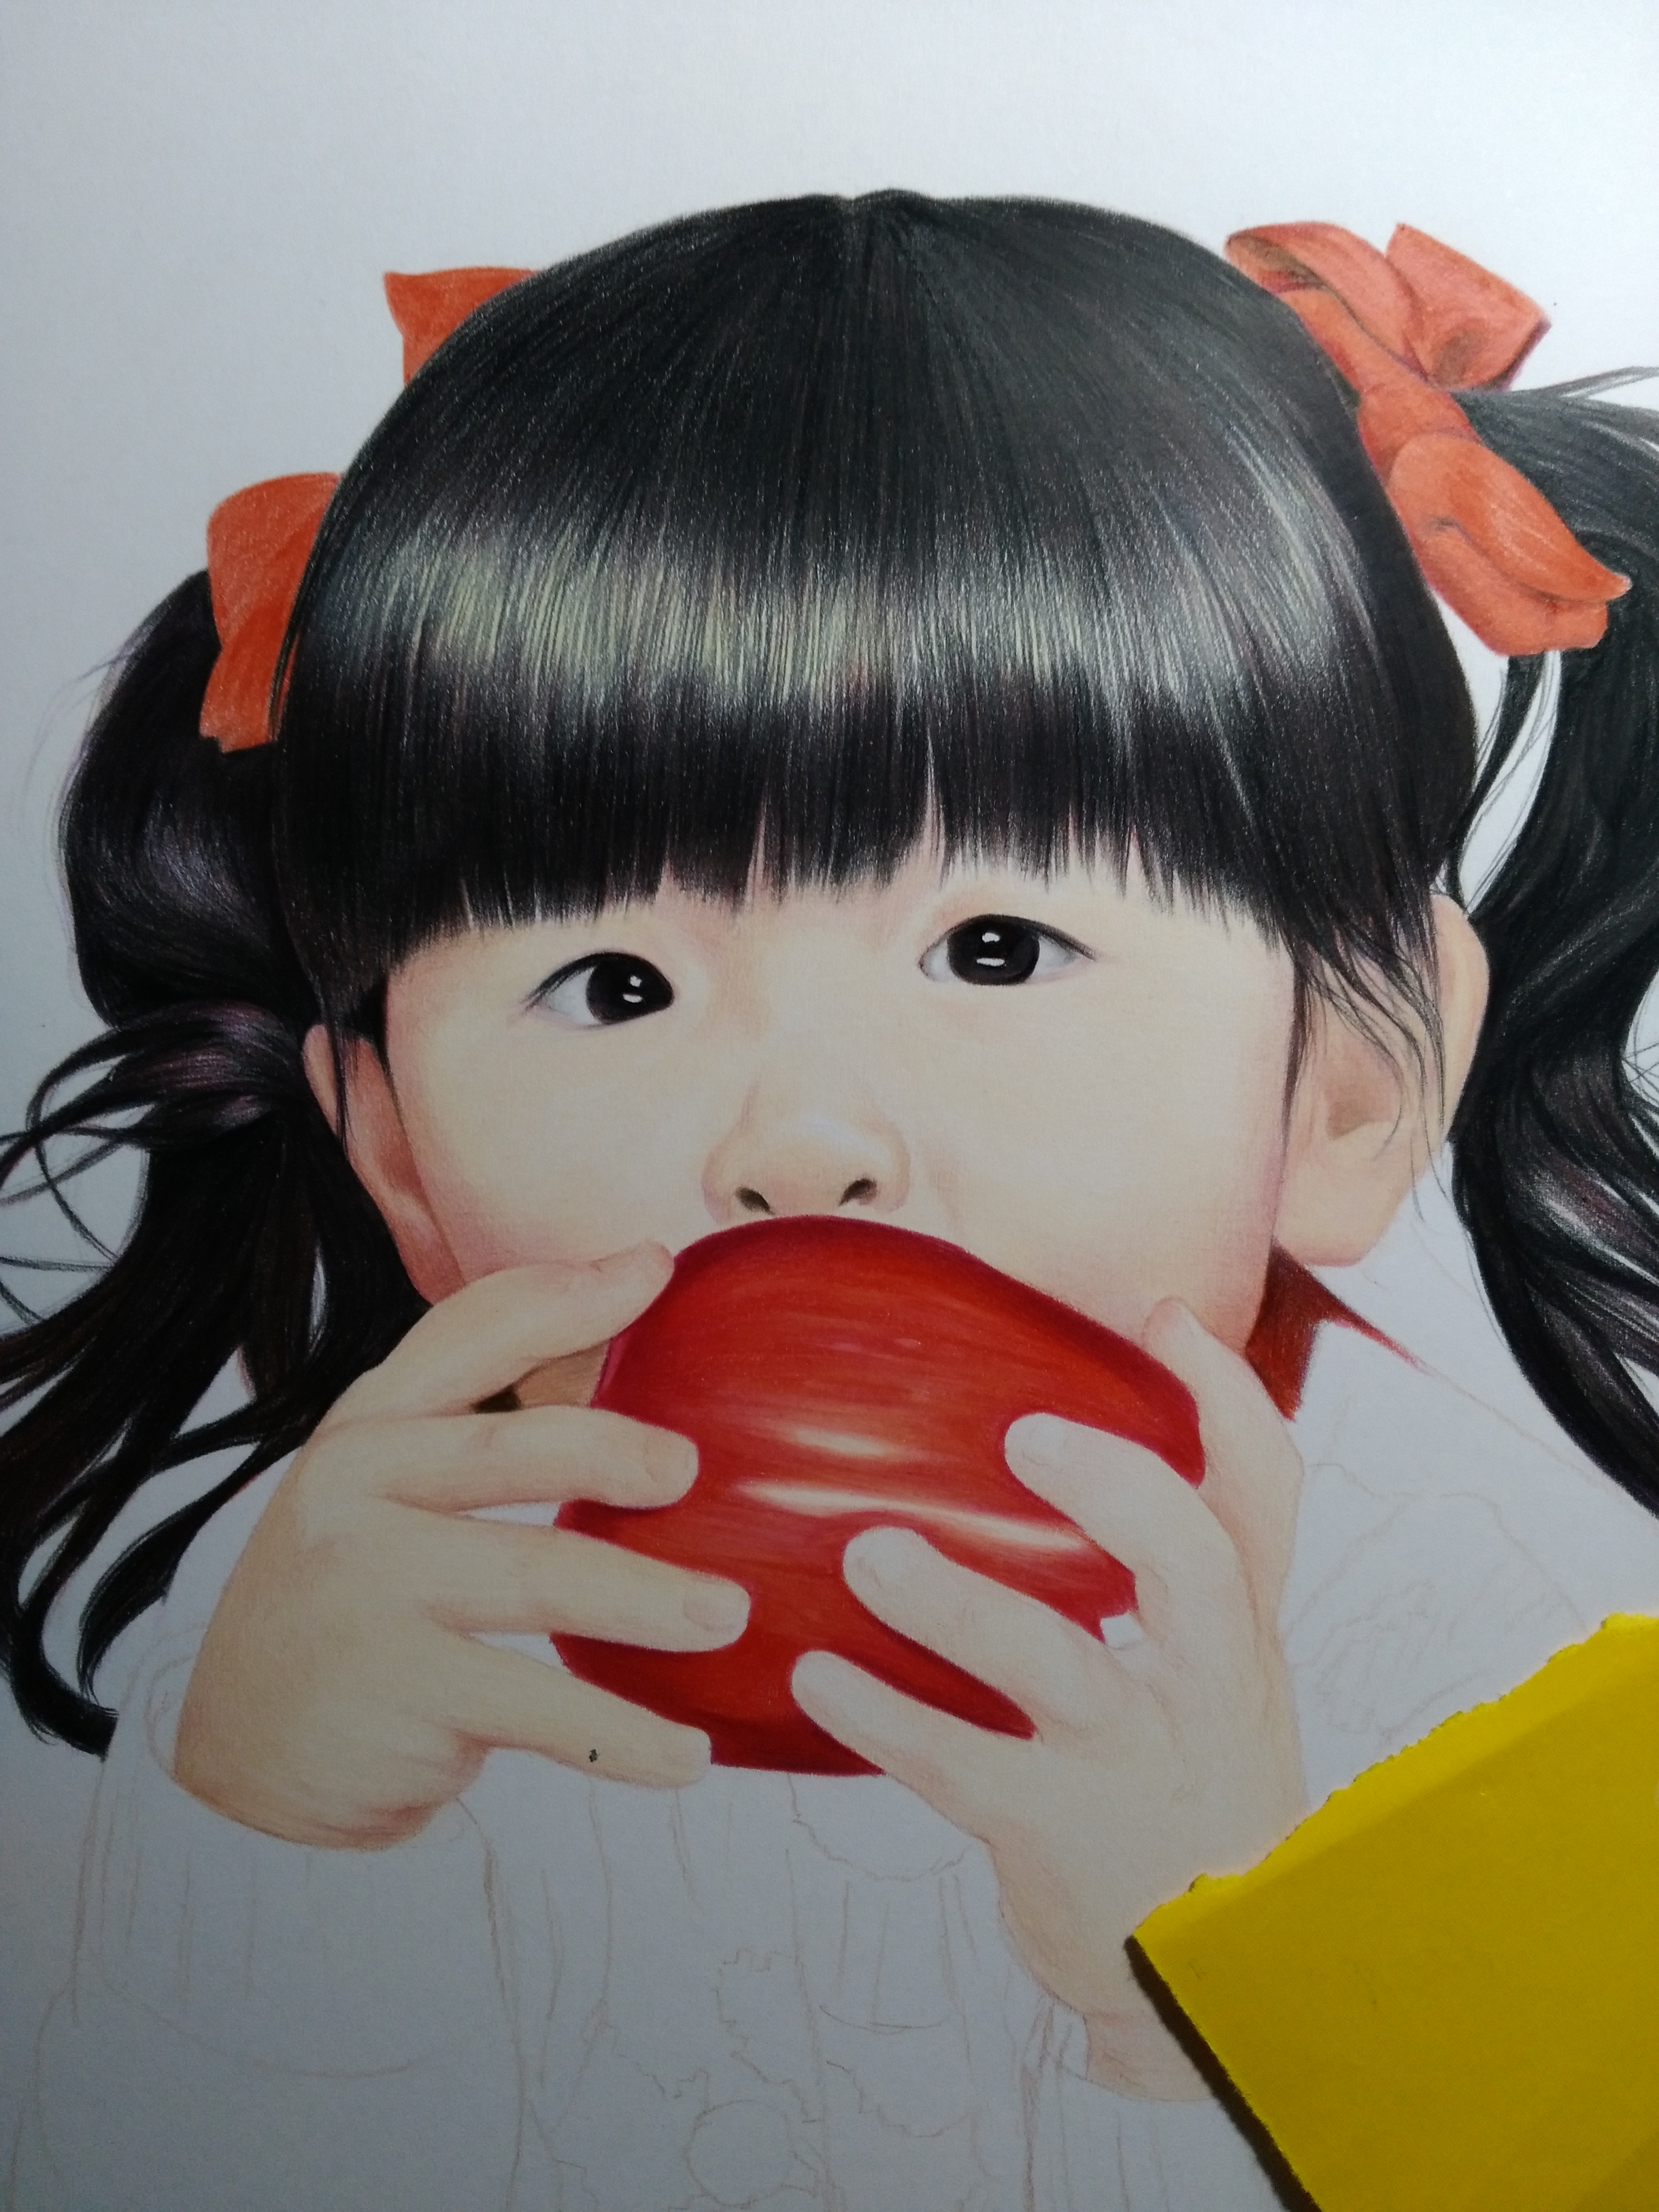 吃苹果的小女孩